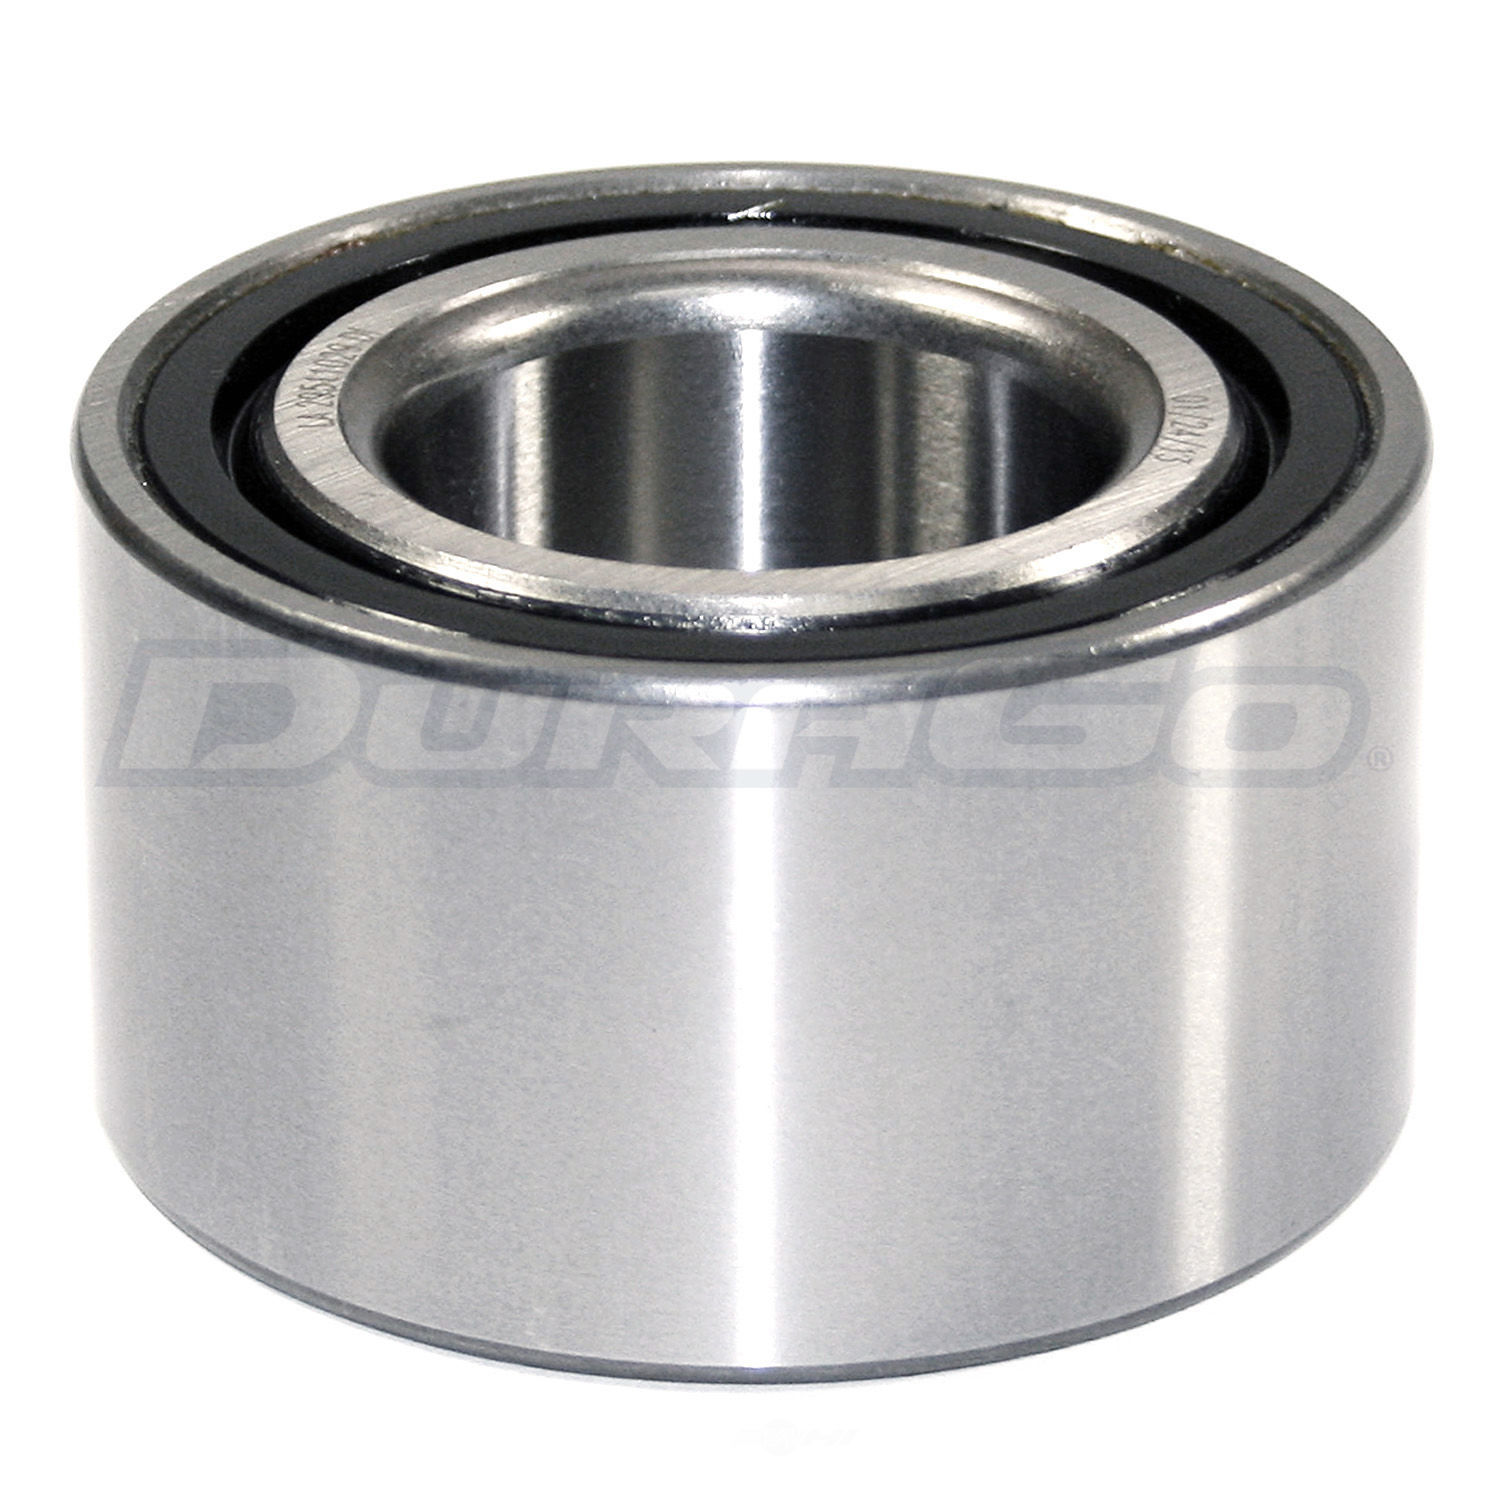 DURAGO - Wheel Bearing - D48 295-11029